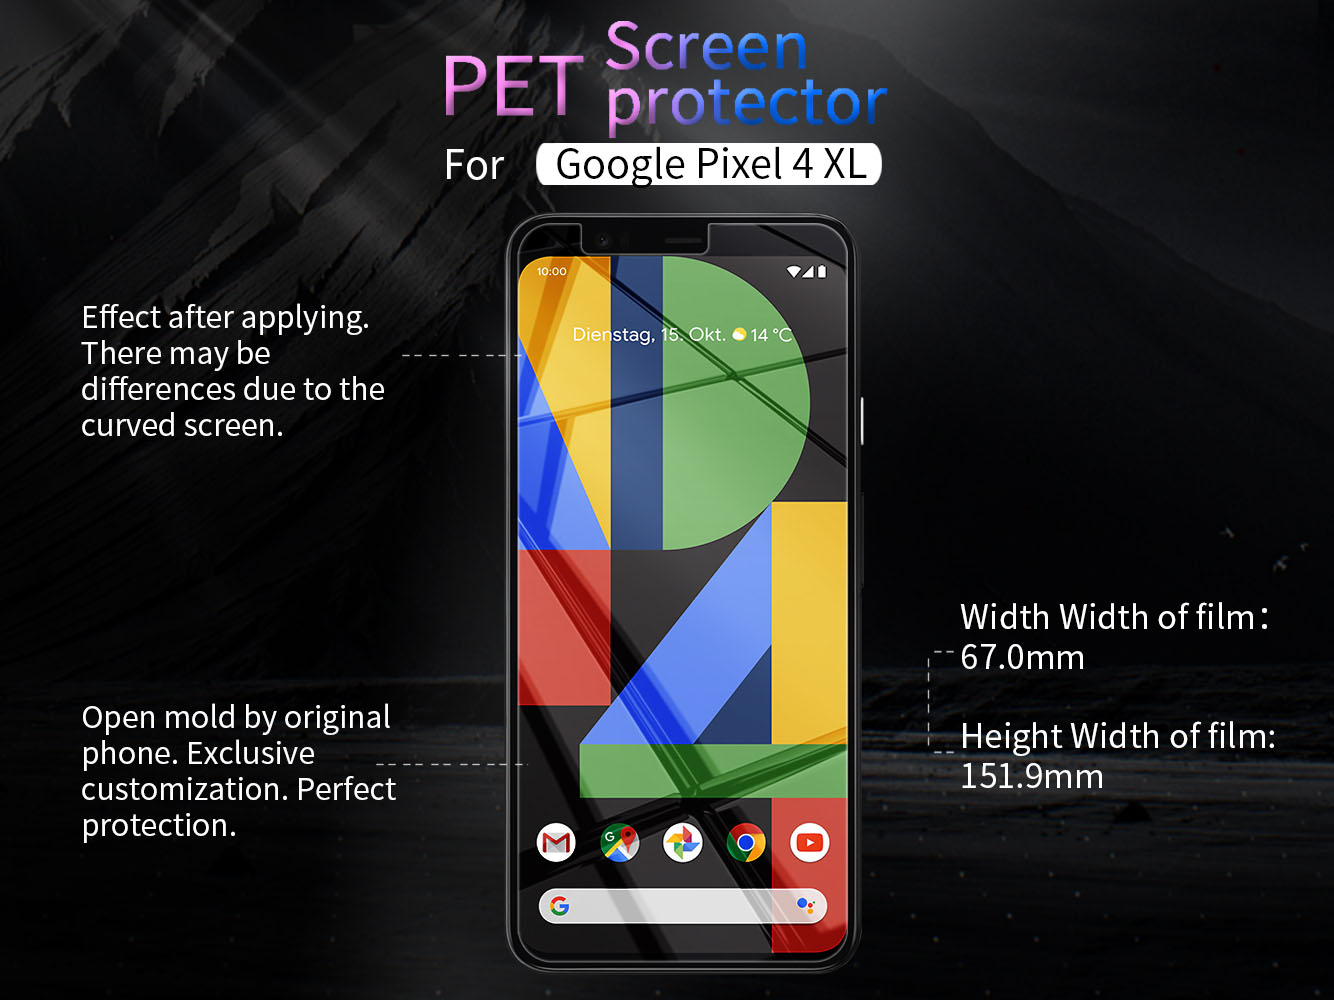 Google Pixel 4 XL screen protector